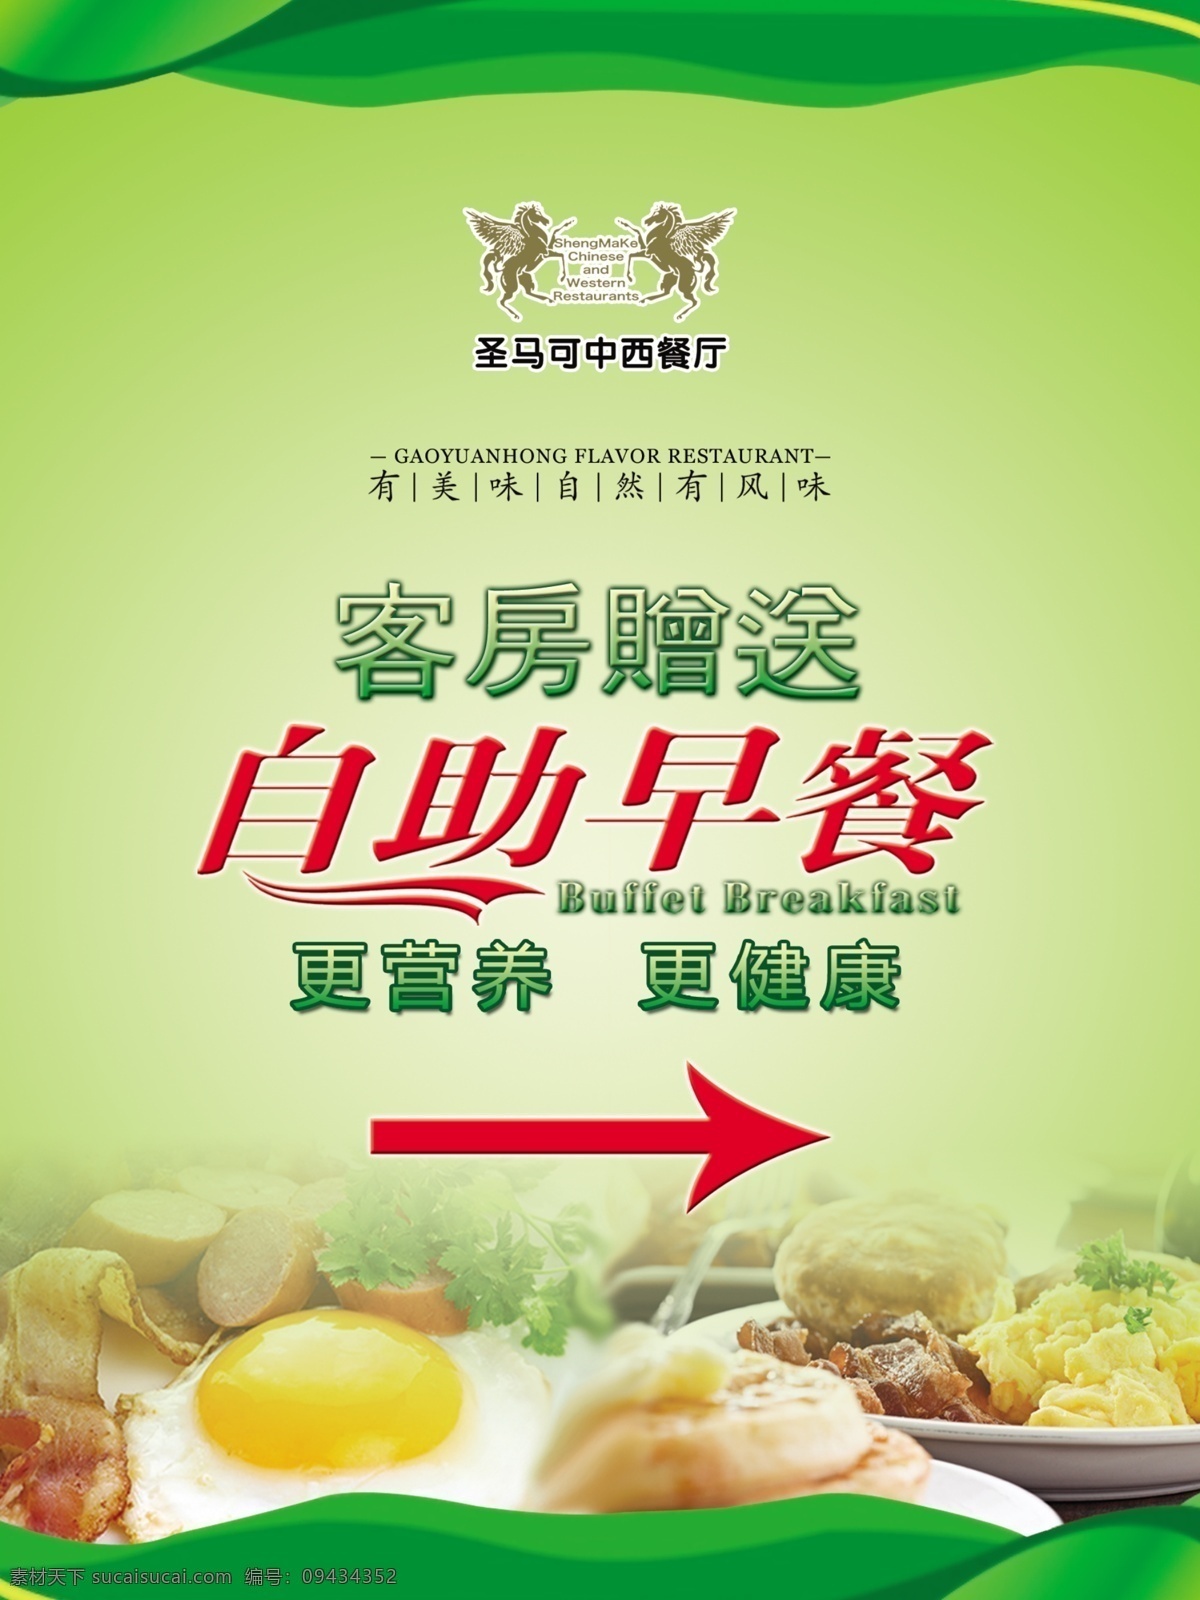 中西餐厅 自助餐 海报 自助早餐 美食 营养美食 漂亮底图 绿色清新 广告设计模板 源文件